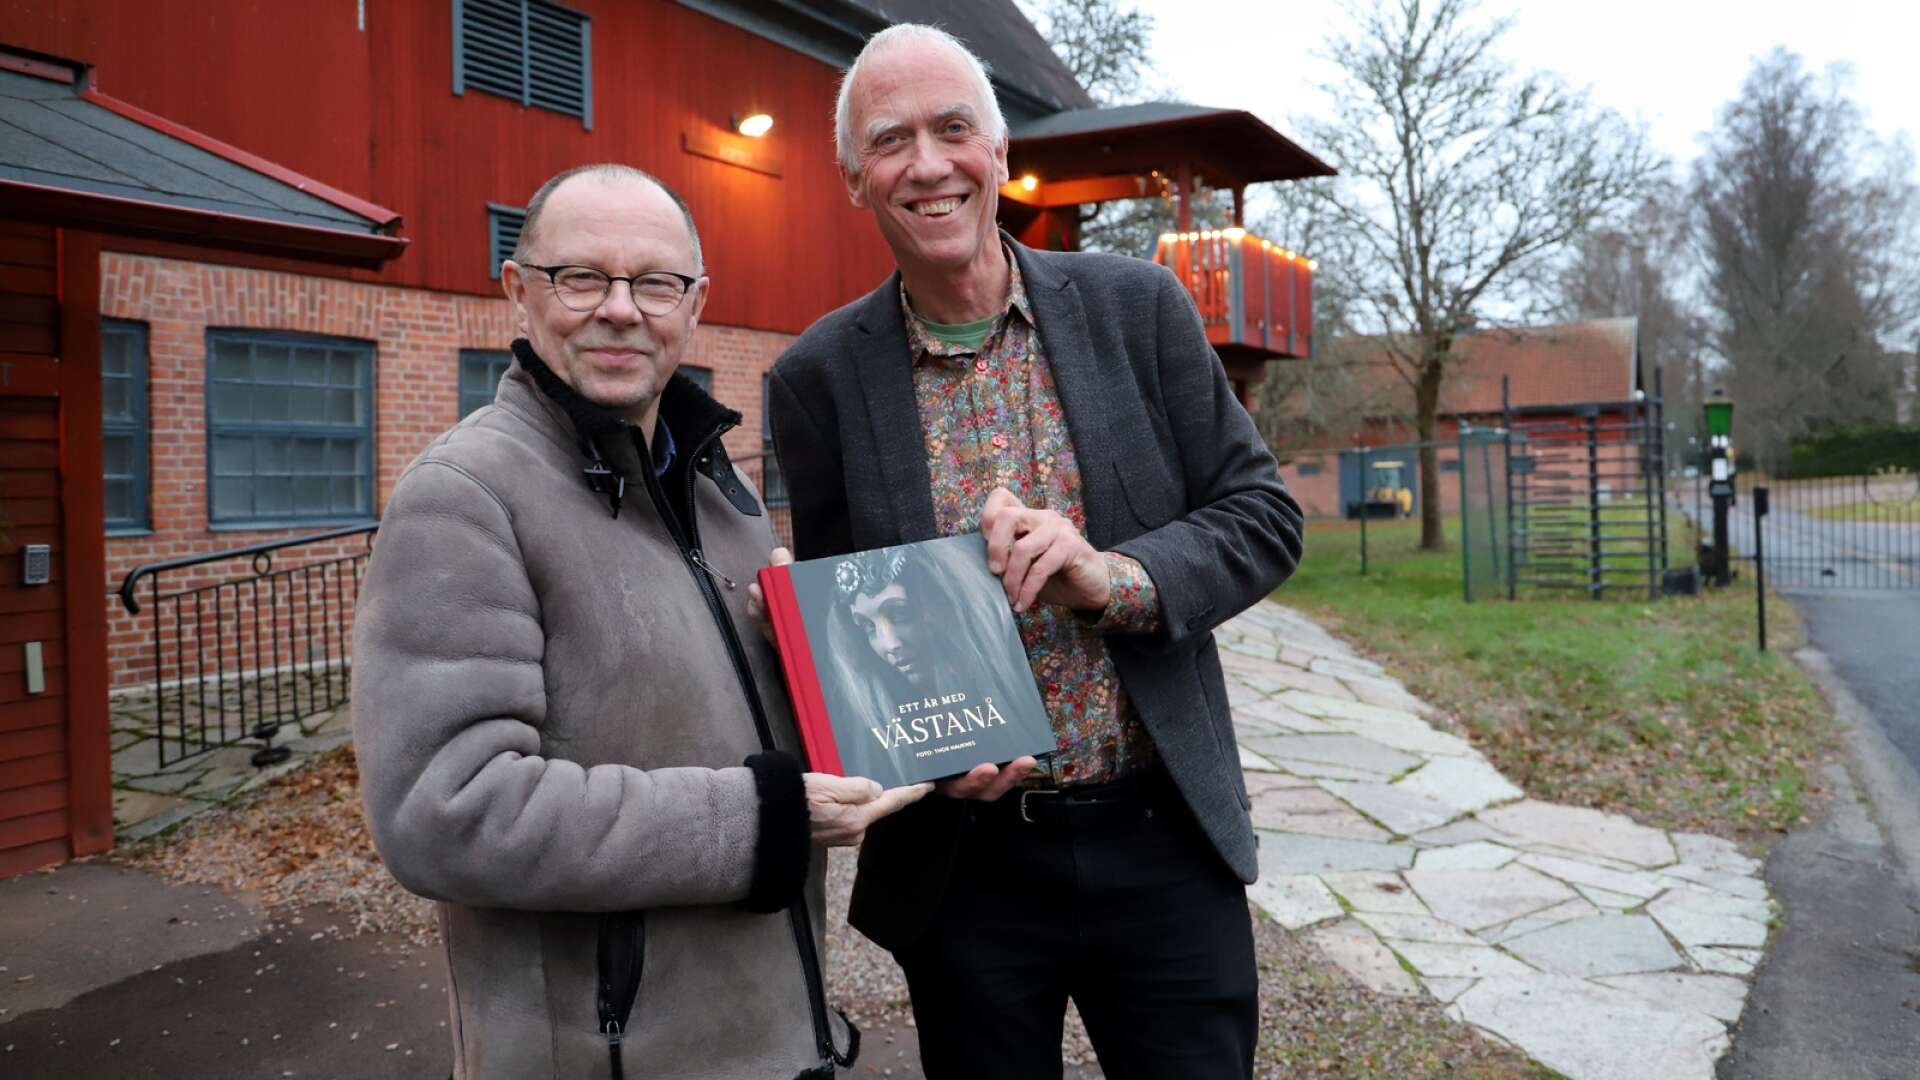 Fotografen Thor Hauknes (till höger) följde Västanå teater under ett år. Teaterchefen Leif Stinnerbom är nöjd med resultatet. ”Man blir lite förvånad själv hur mycket som kan ske på ett år. ”